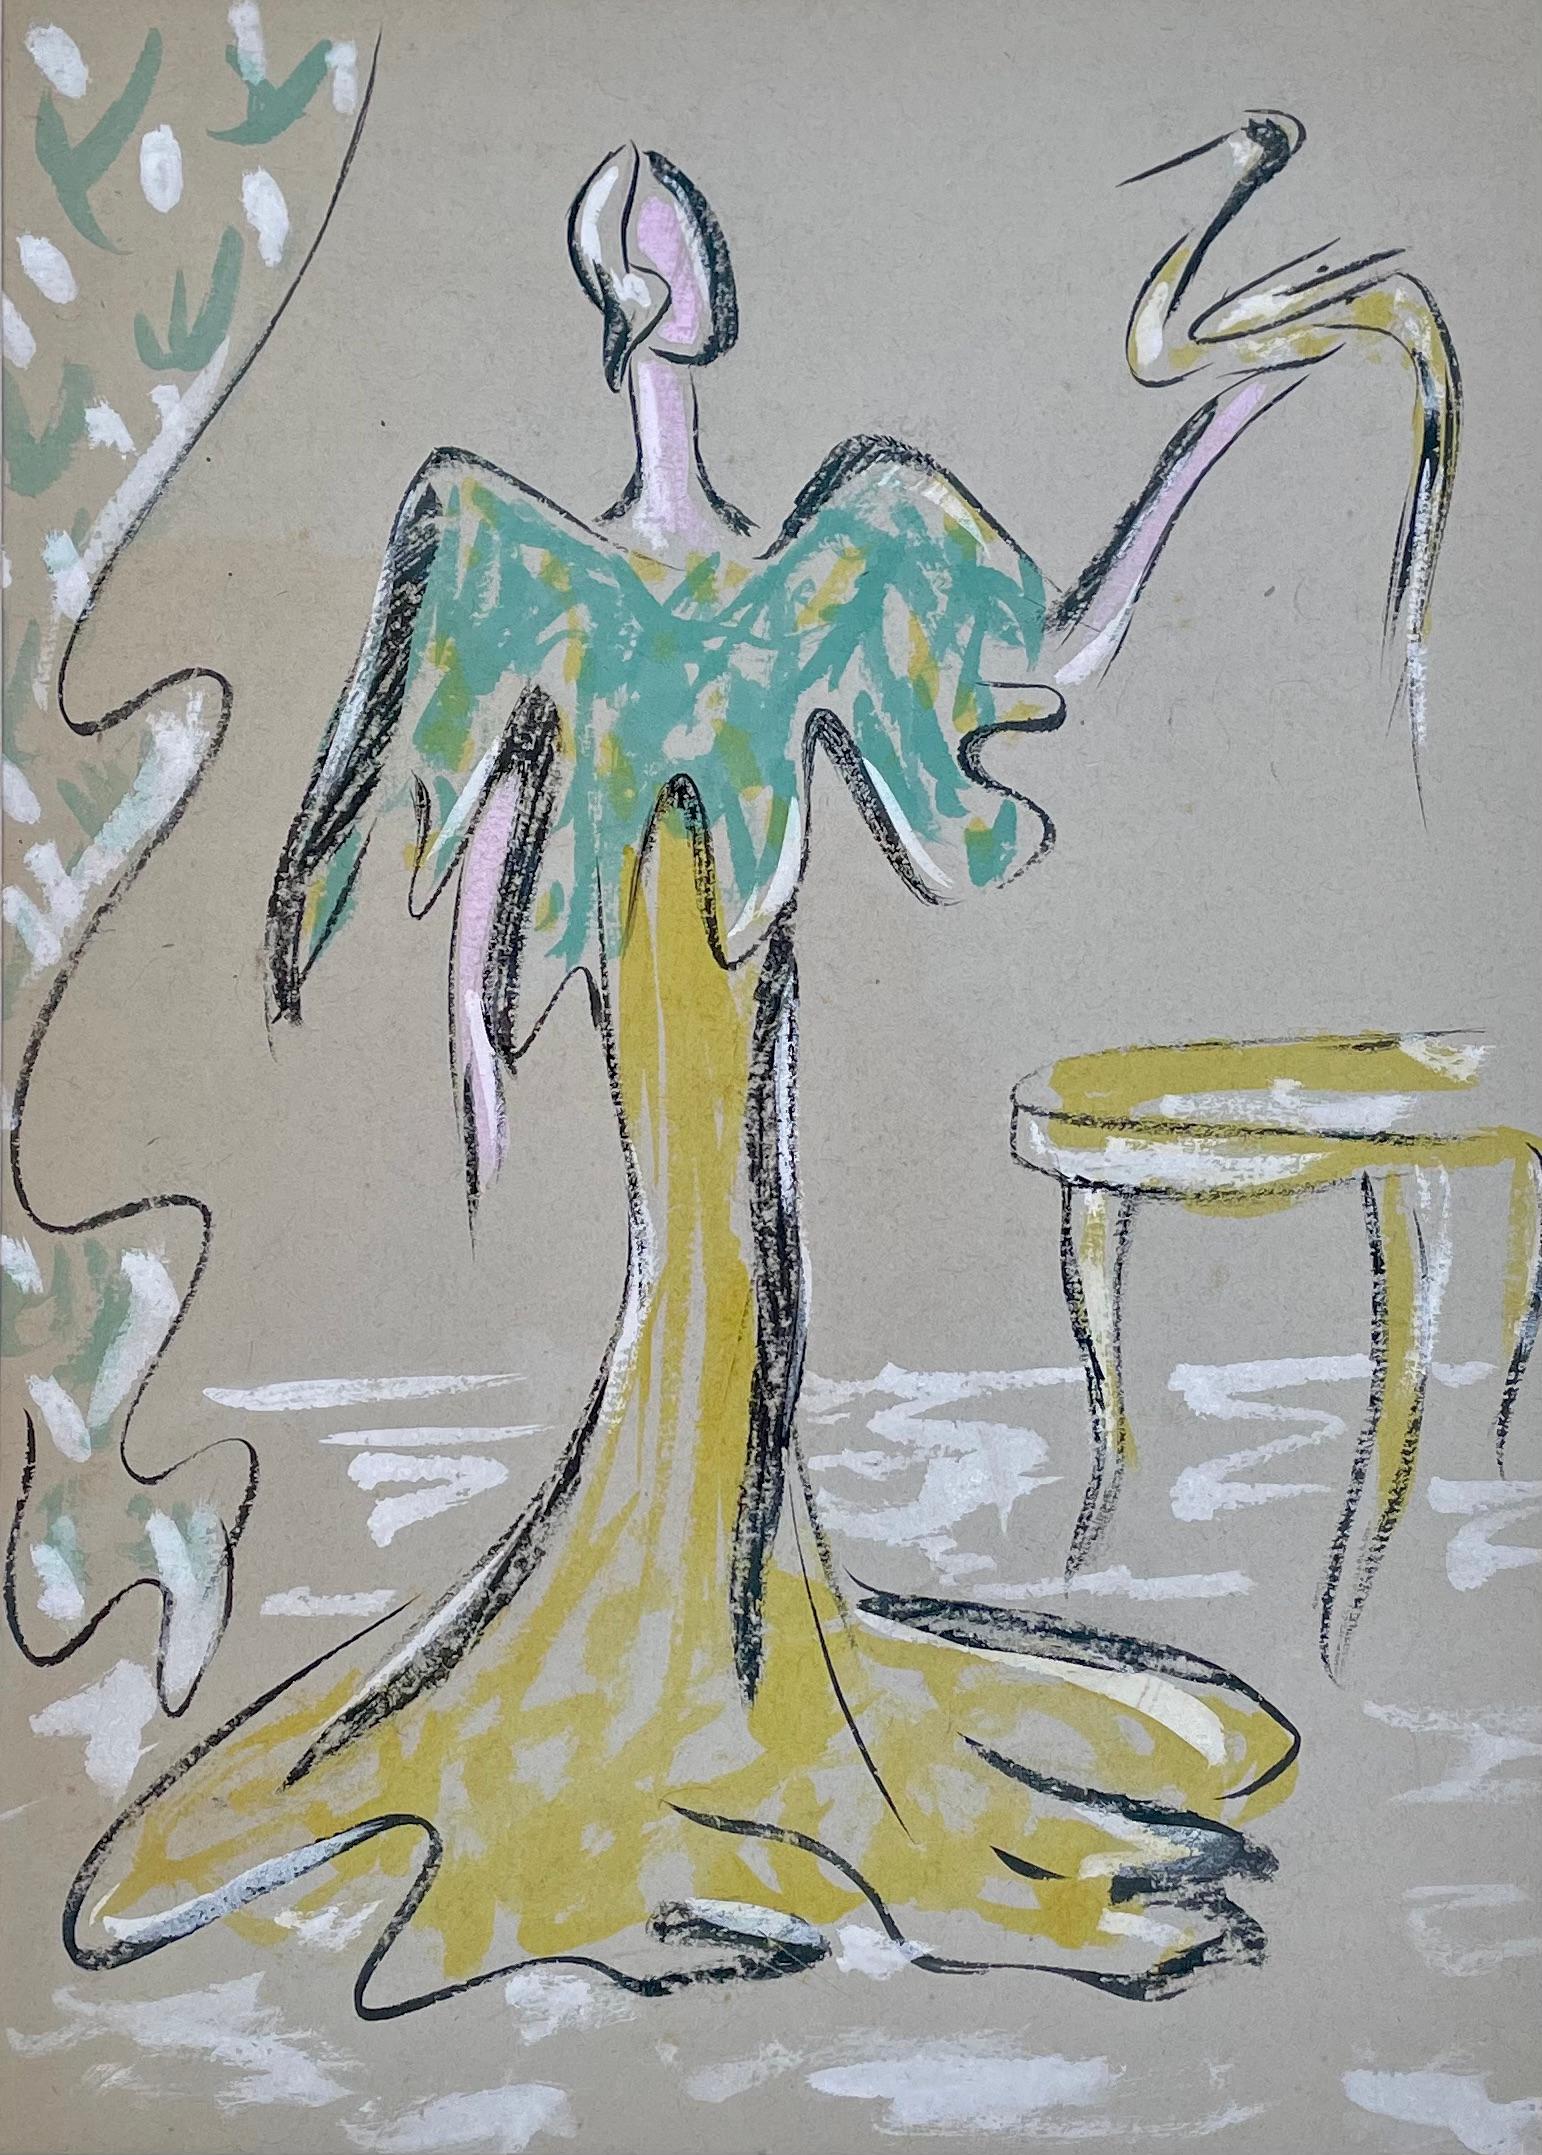 JOHN DRONSFIELD
(1900-1951)

Abito giallo e verde

Acquerello e gesso
Non incorniciato

38 x 27,5 cm, 15 x 11 pollici.
(dimensioni del supporto 59 x 47 cm, 23 ¼ x 18 ½ in.)

John Marsden Dronsfield è nato nel Lancashire.  Ha studiato per un breve